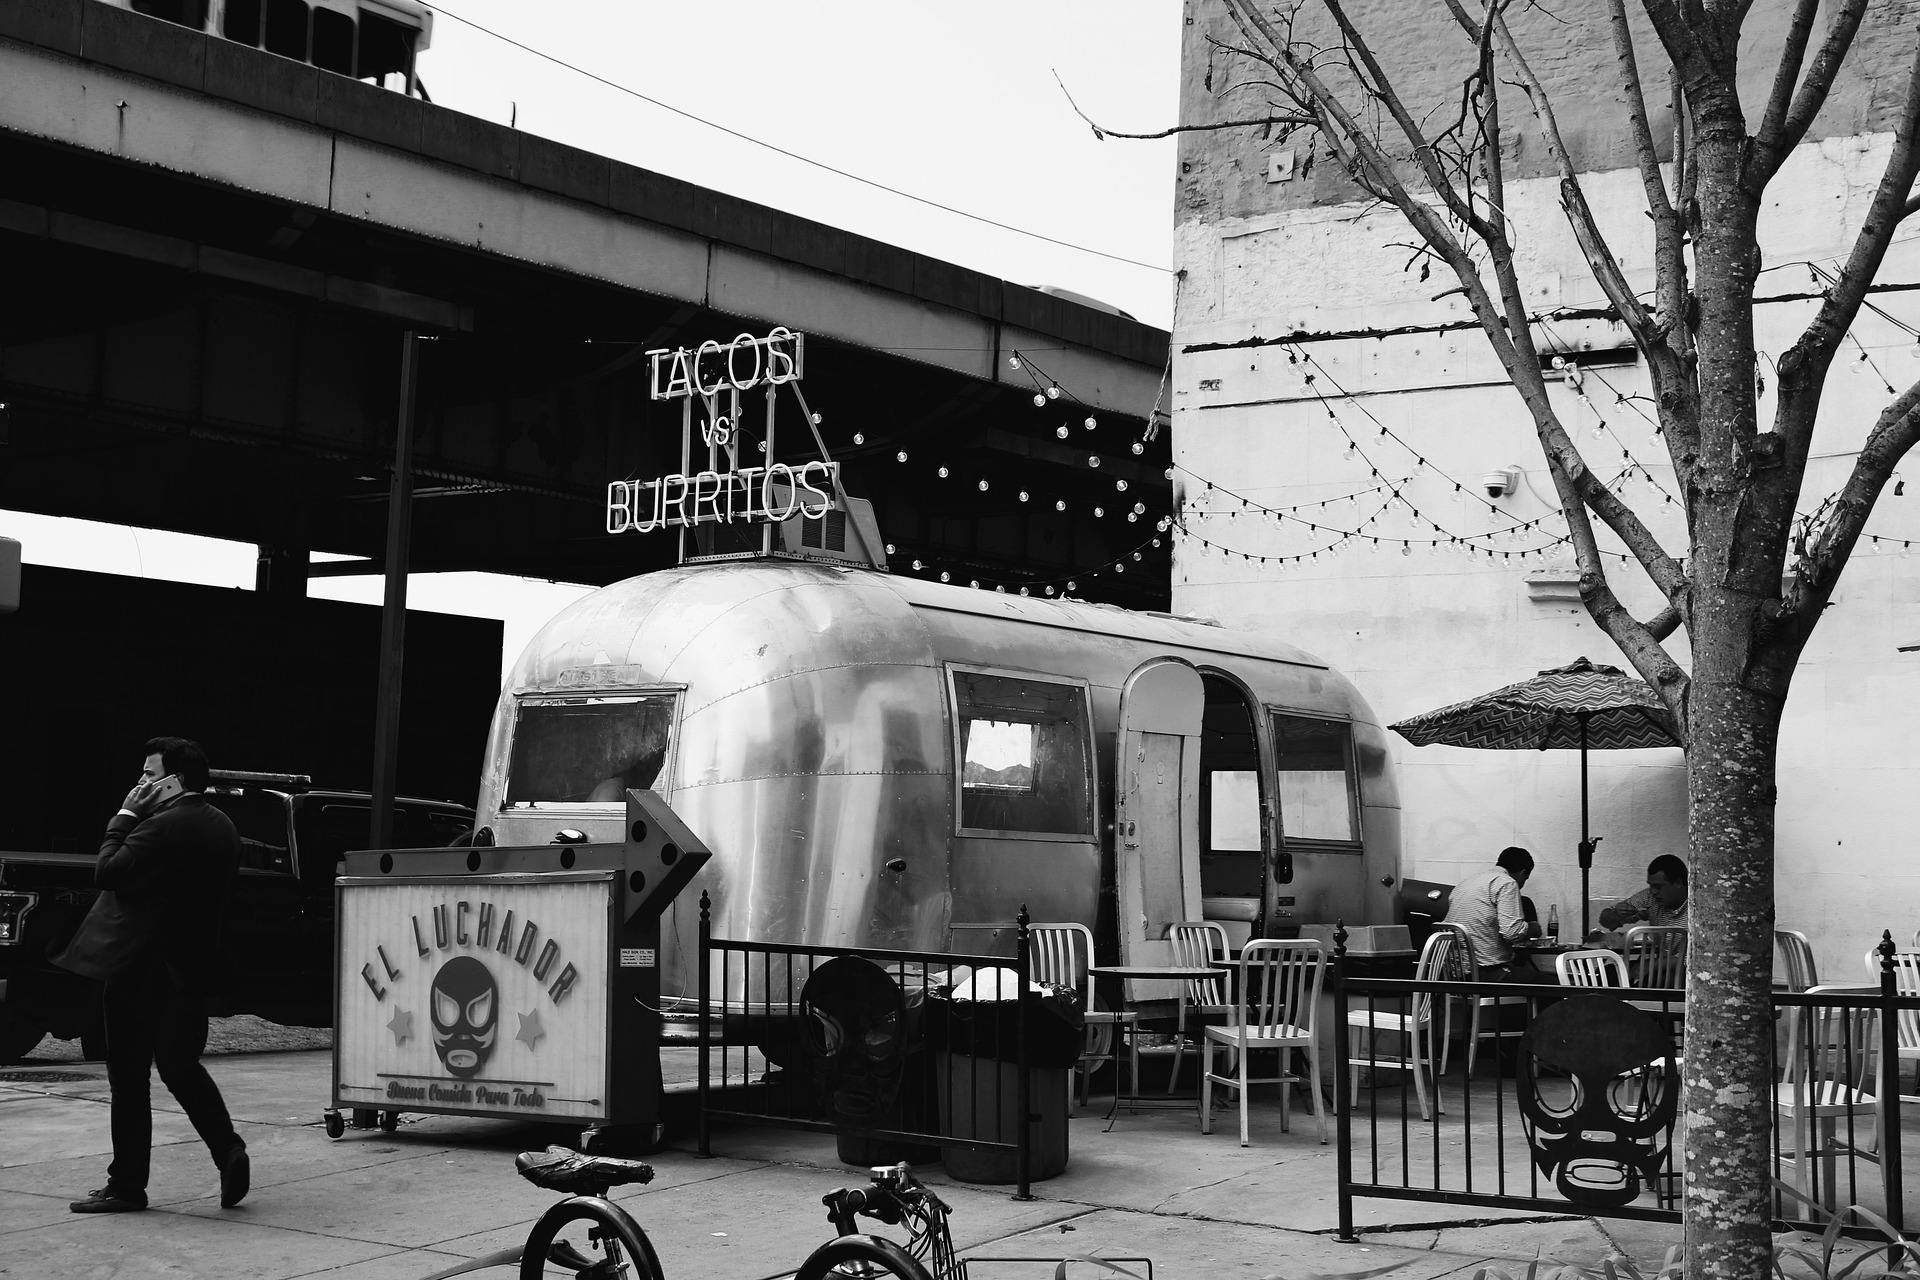 Das Schwarz-weiß Bild zeigt einen alten silbernen Foodtruck, welcher Tacos und Burritos verkauft. Um dem Truck herum befinden sich Stühle und Tische zum Essen.